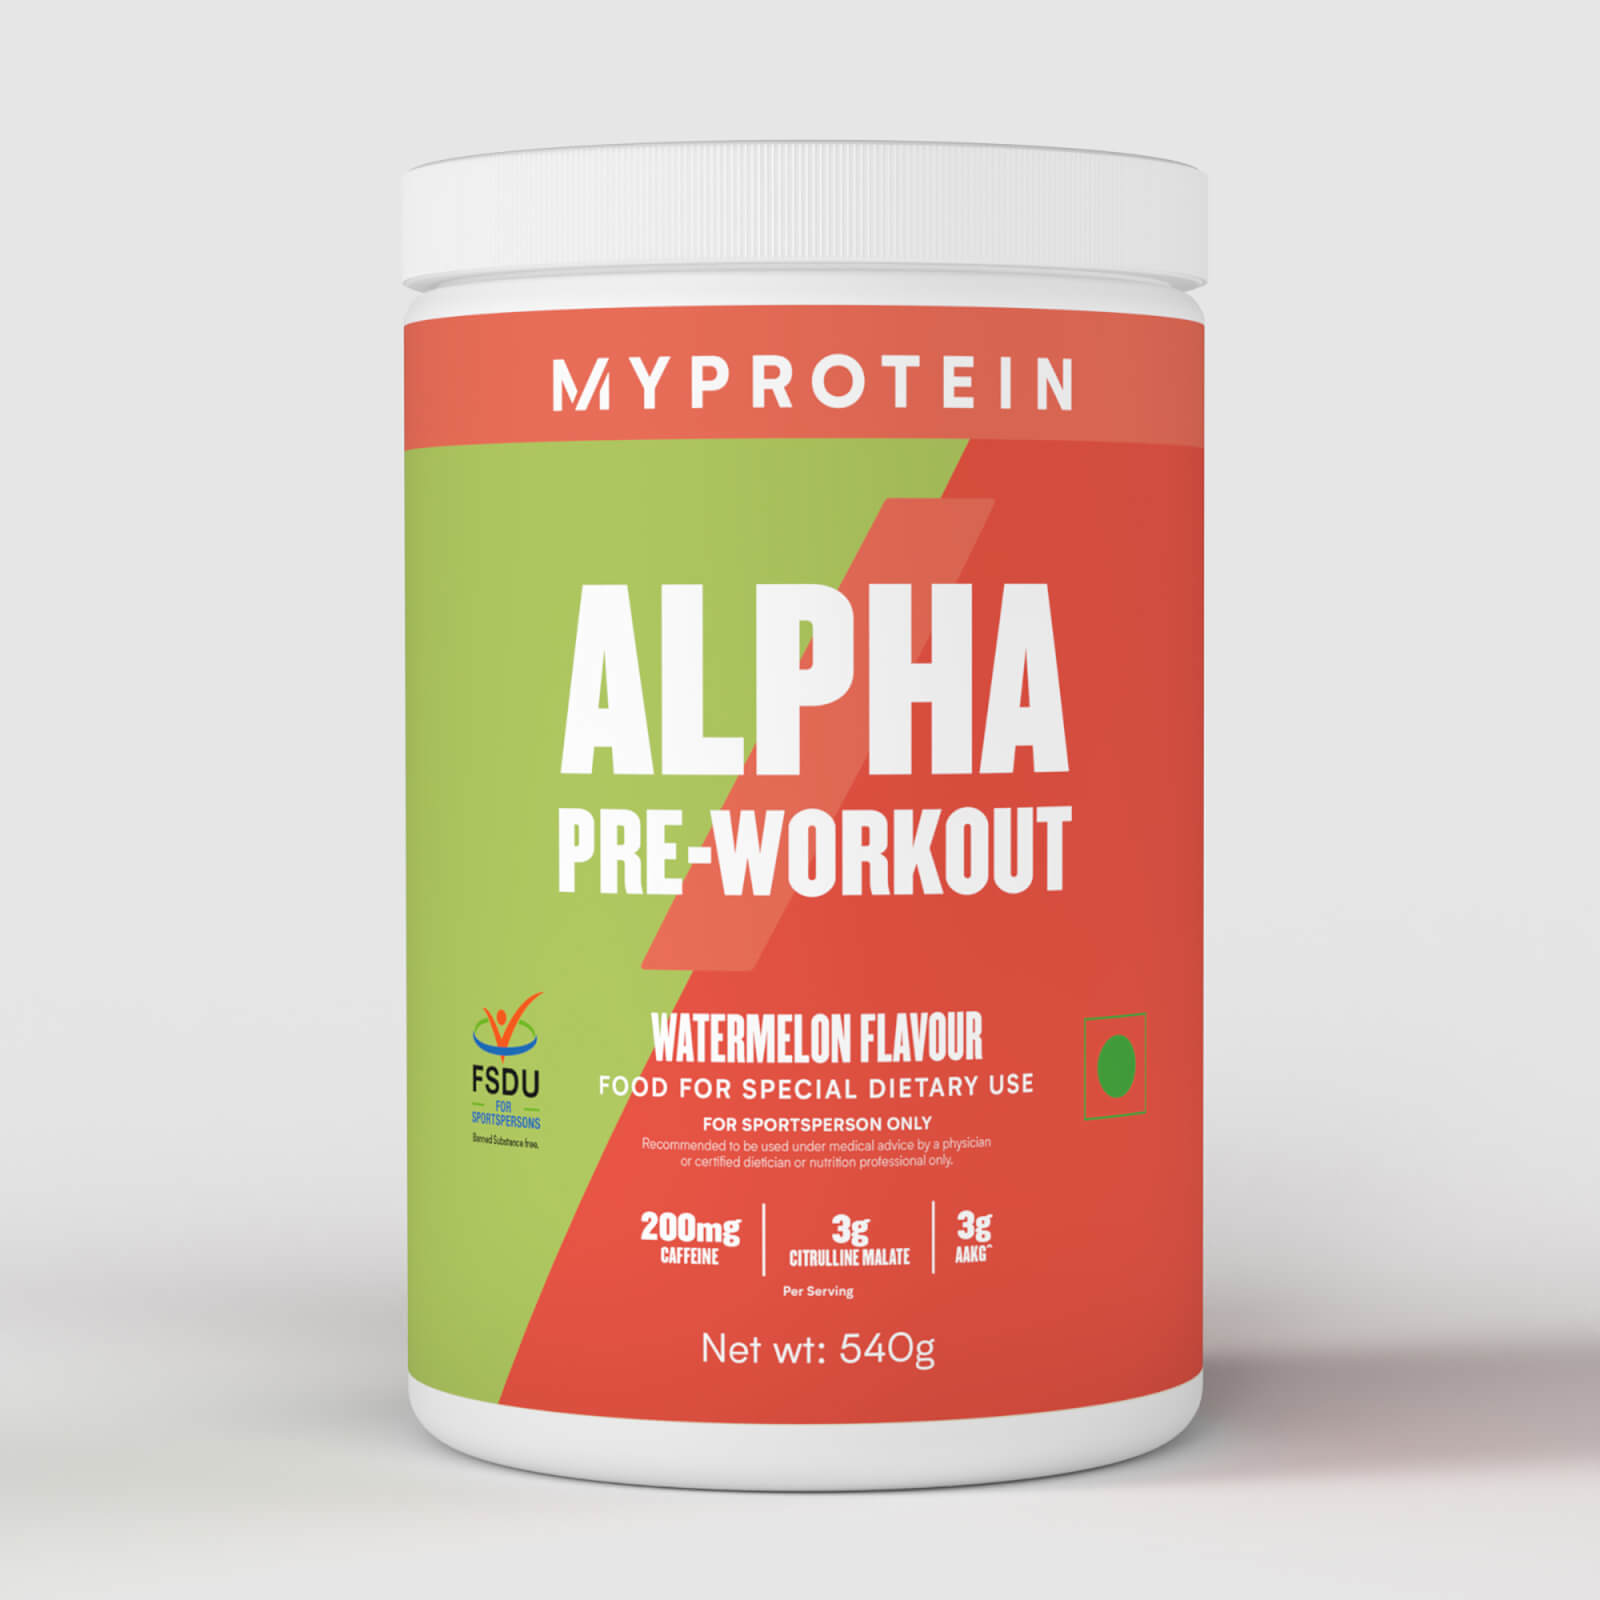 Pre-Workout　Alpha　MYPROTEIN™